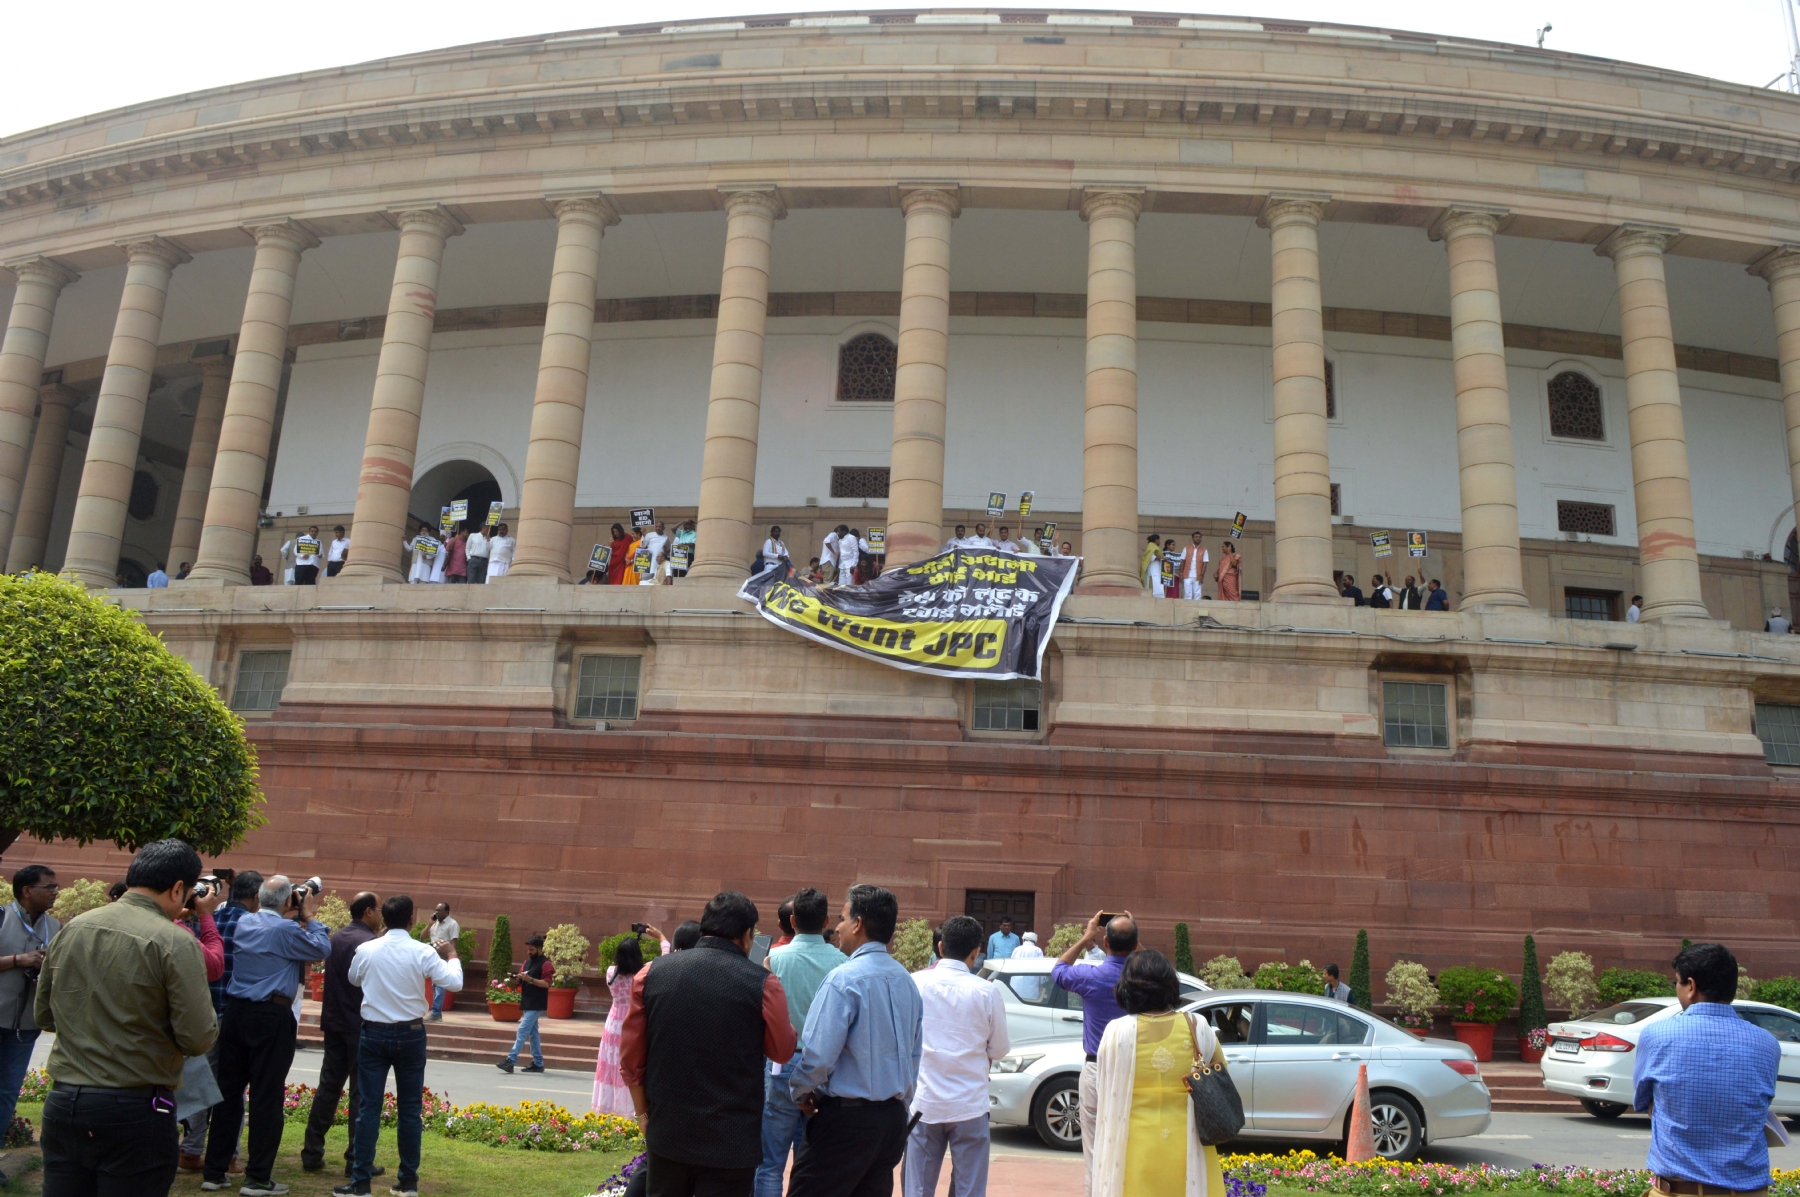 नई दिल्ली में मंगवार 21 मार्च को बजट का दूसरा सत्र के दौरान विपक्षी सांसदों ने संसद की पहली मंजिल पर विरोध प्रदर्शन किया। हिन्दुस्थान समाचार/ फोटो गणेश बिष्ट